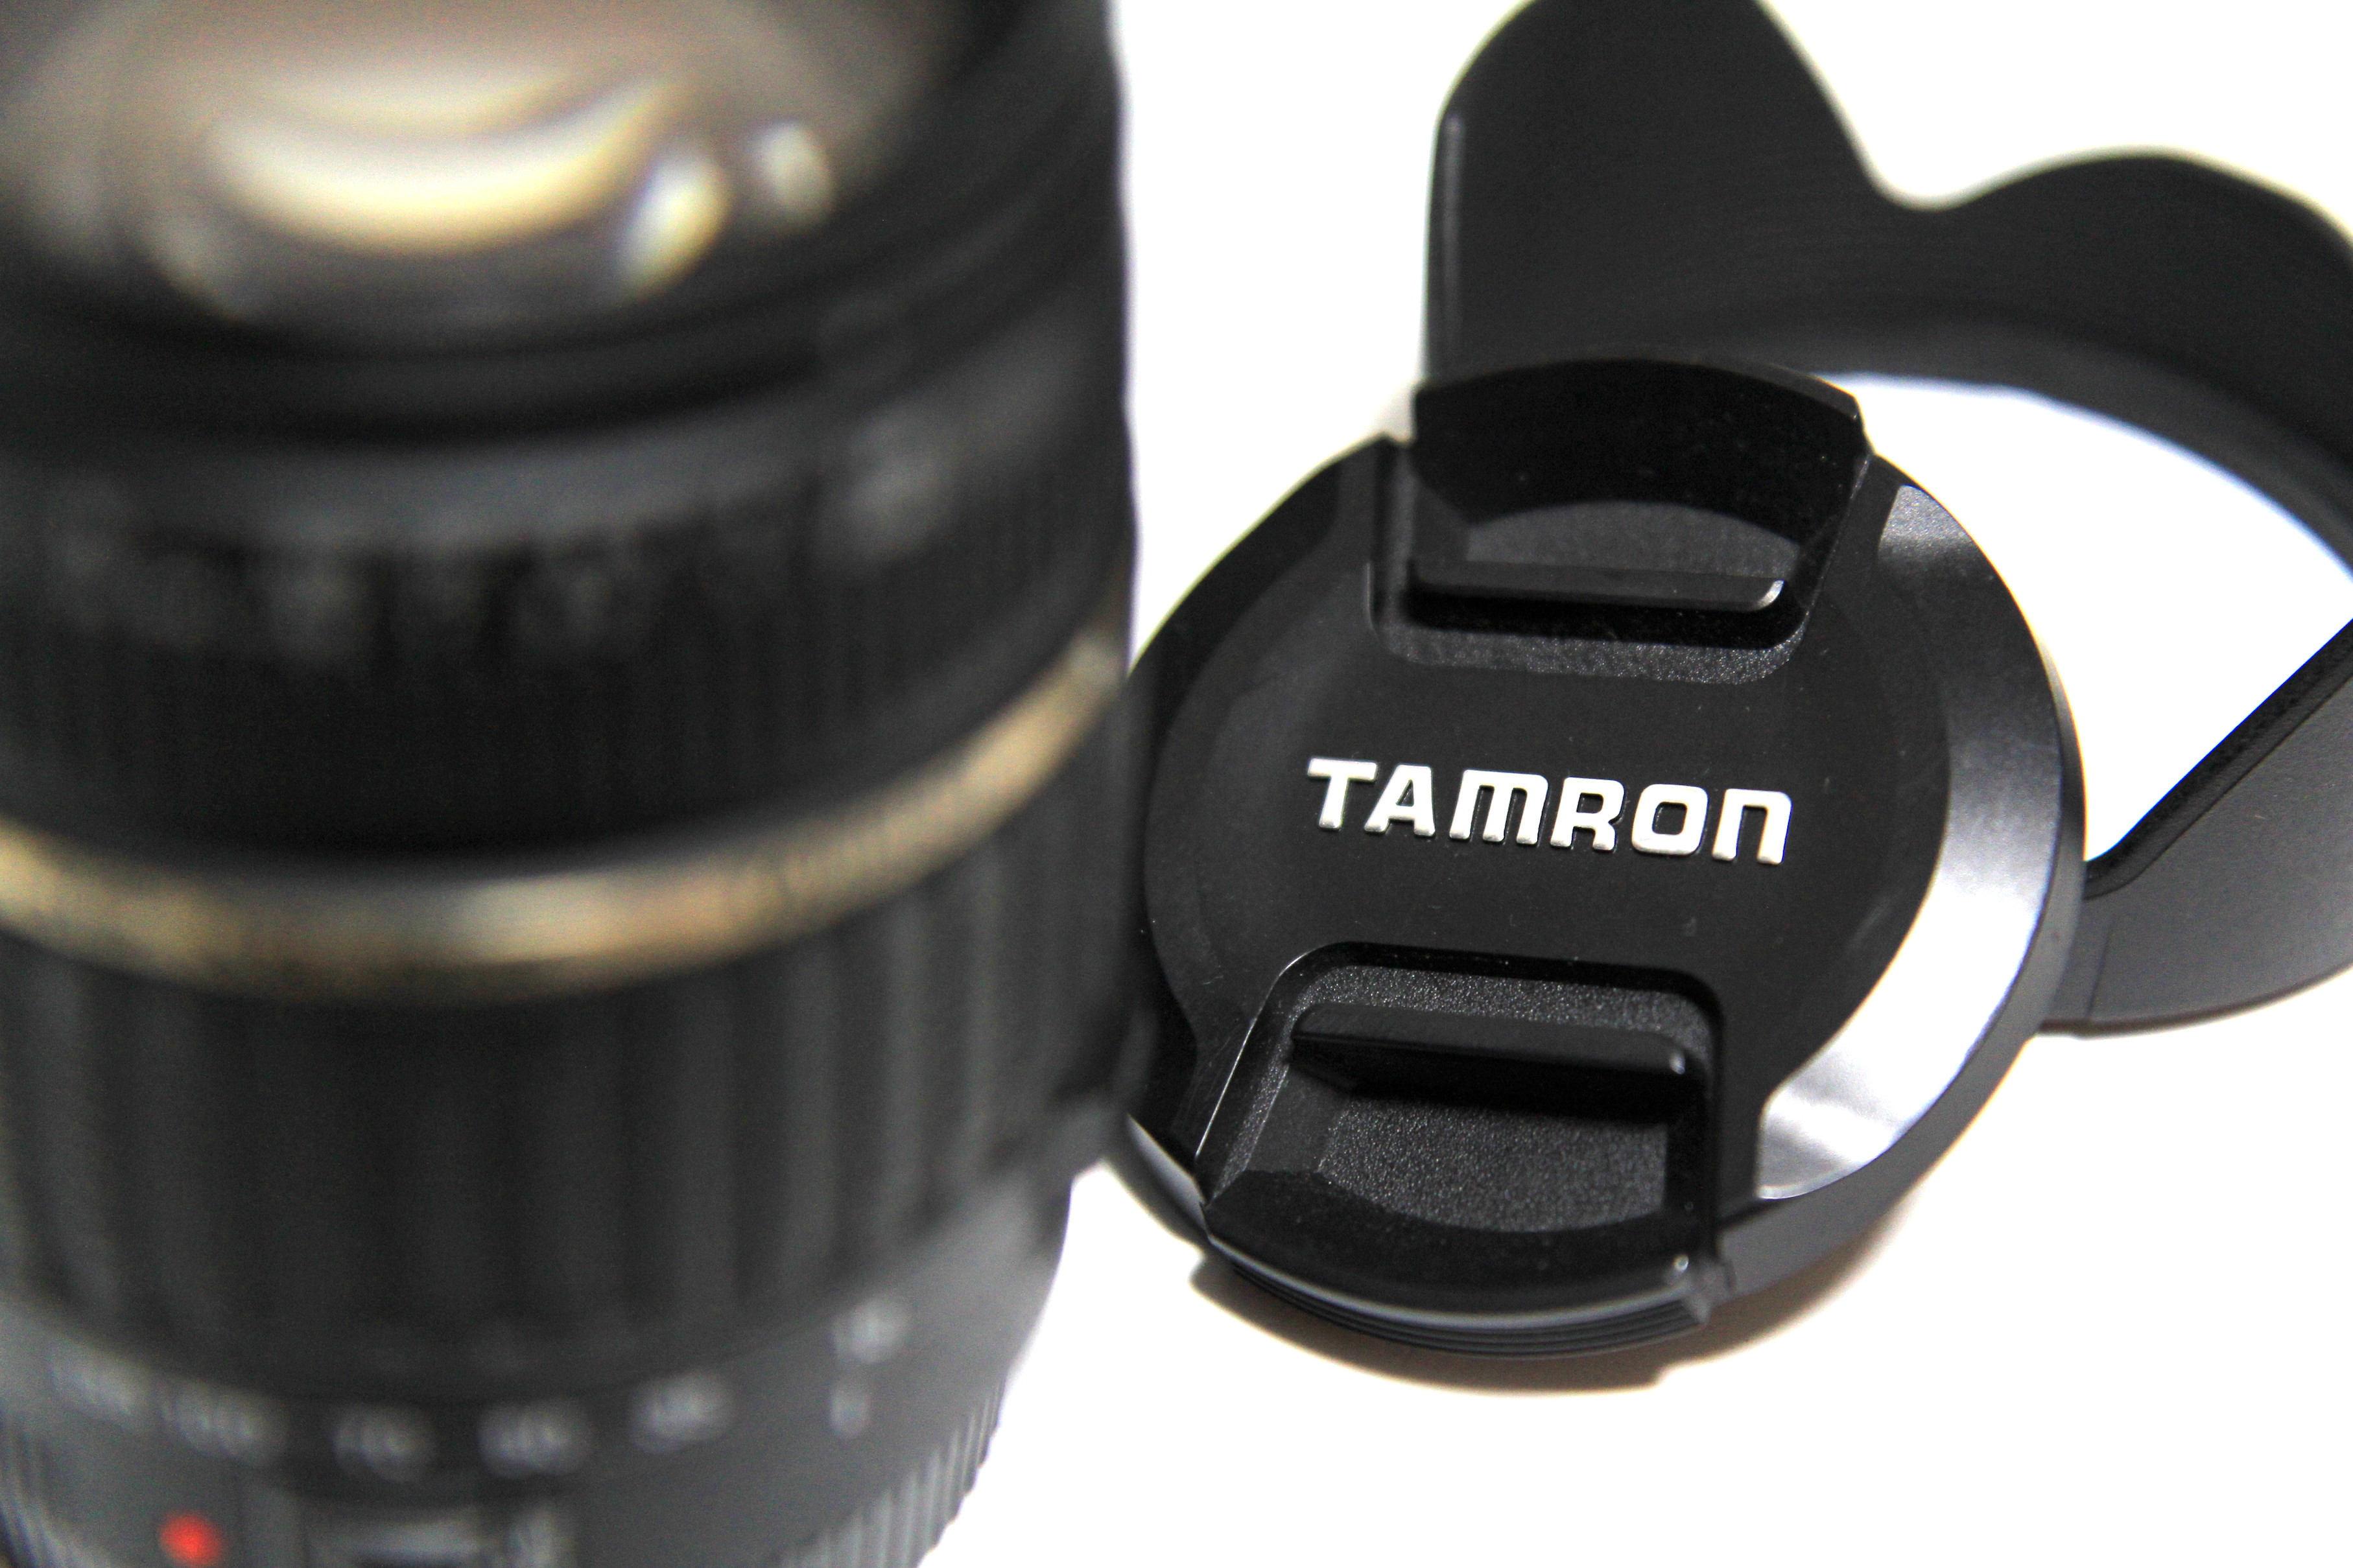 【高倍率ズームレンズ】TAMRON AF18-200mm F3.5-6.3 XR DiⅡレビュー - カメラ機材